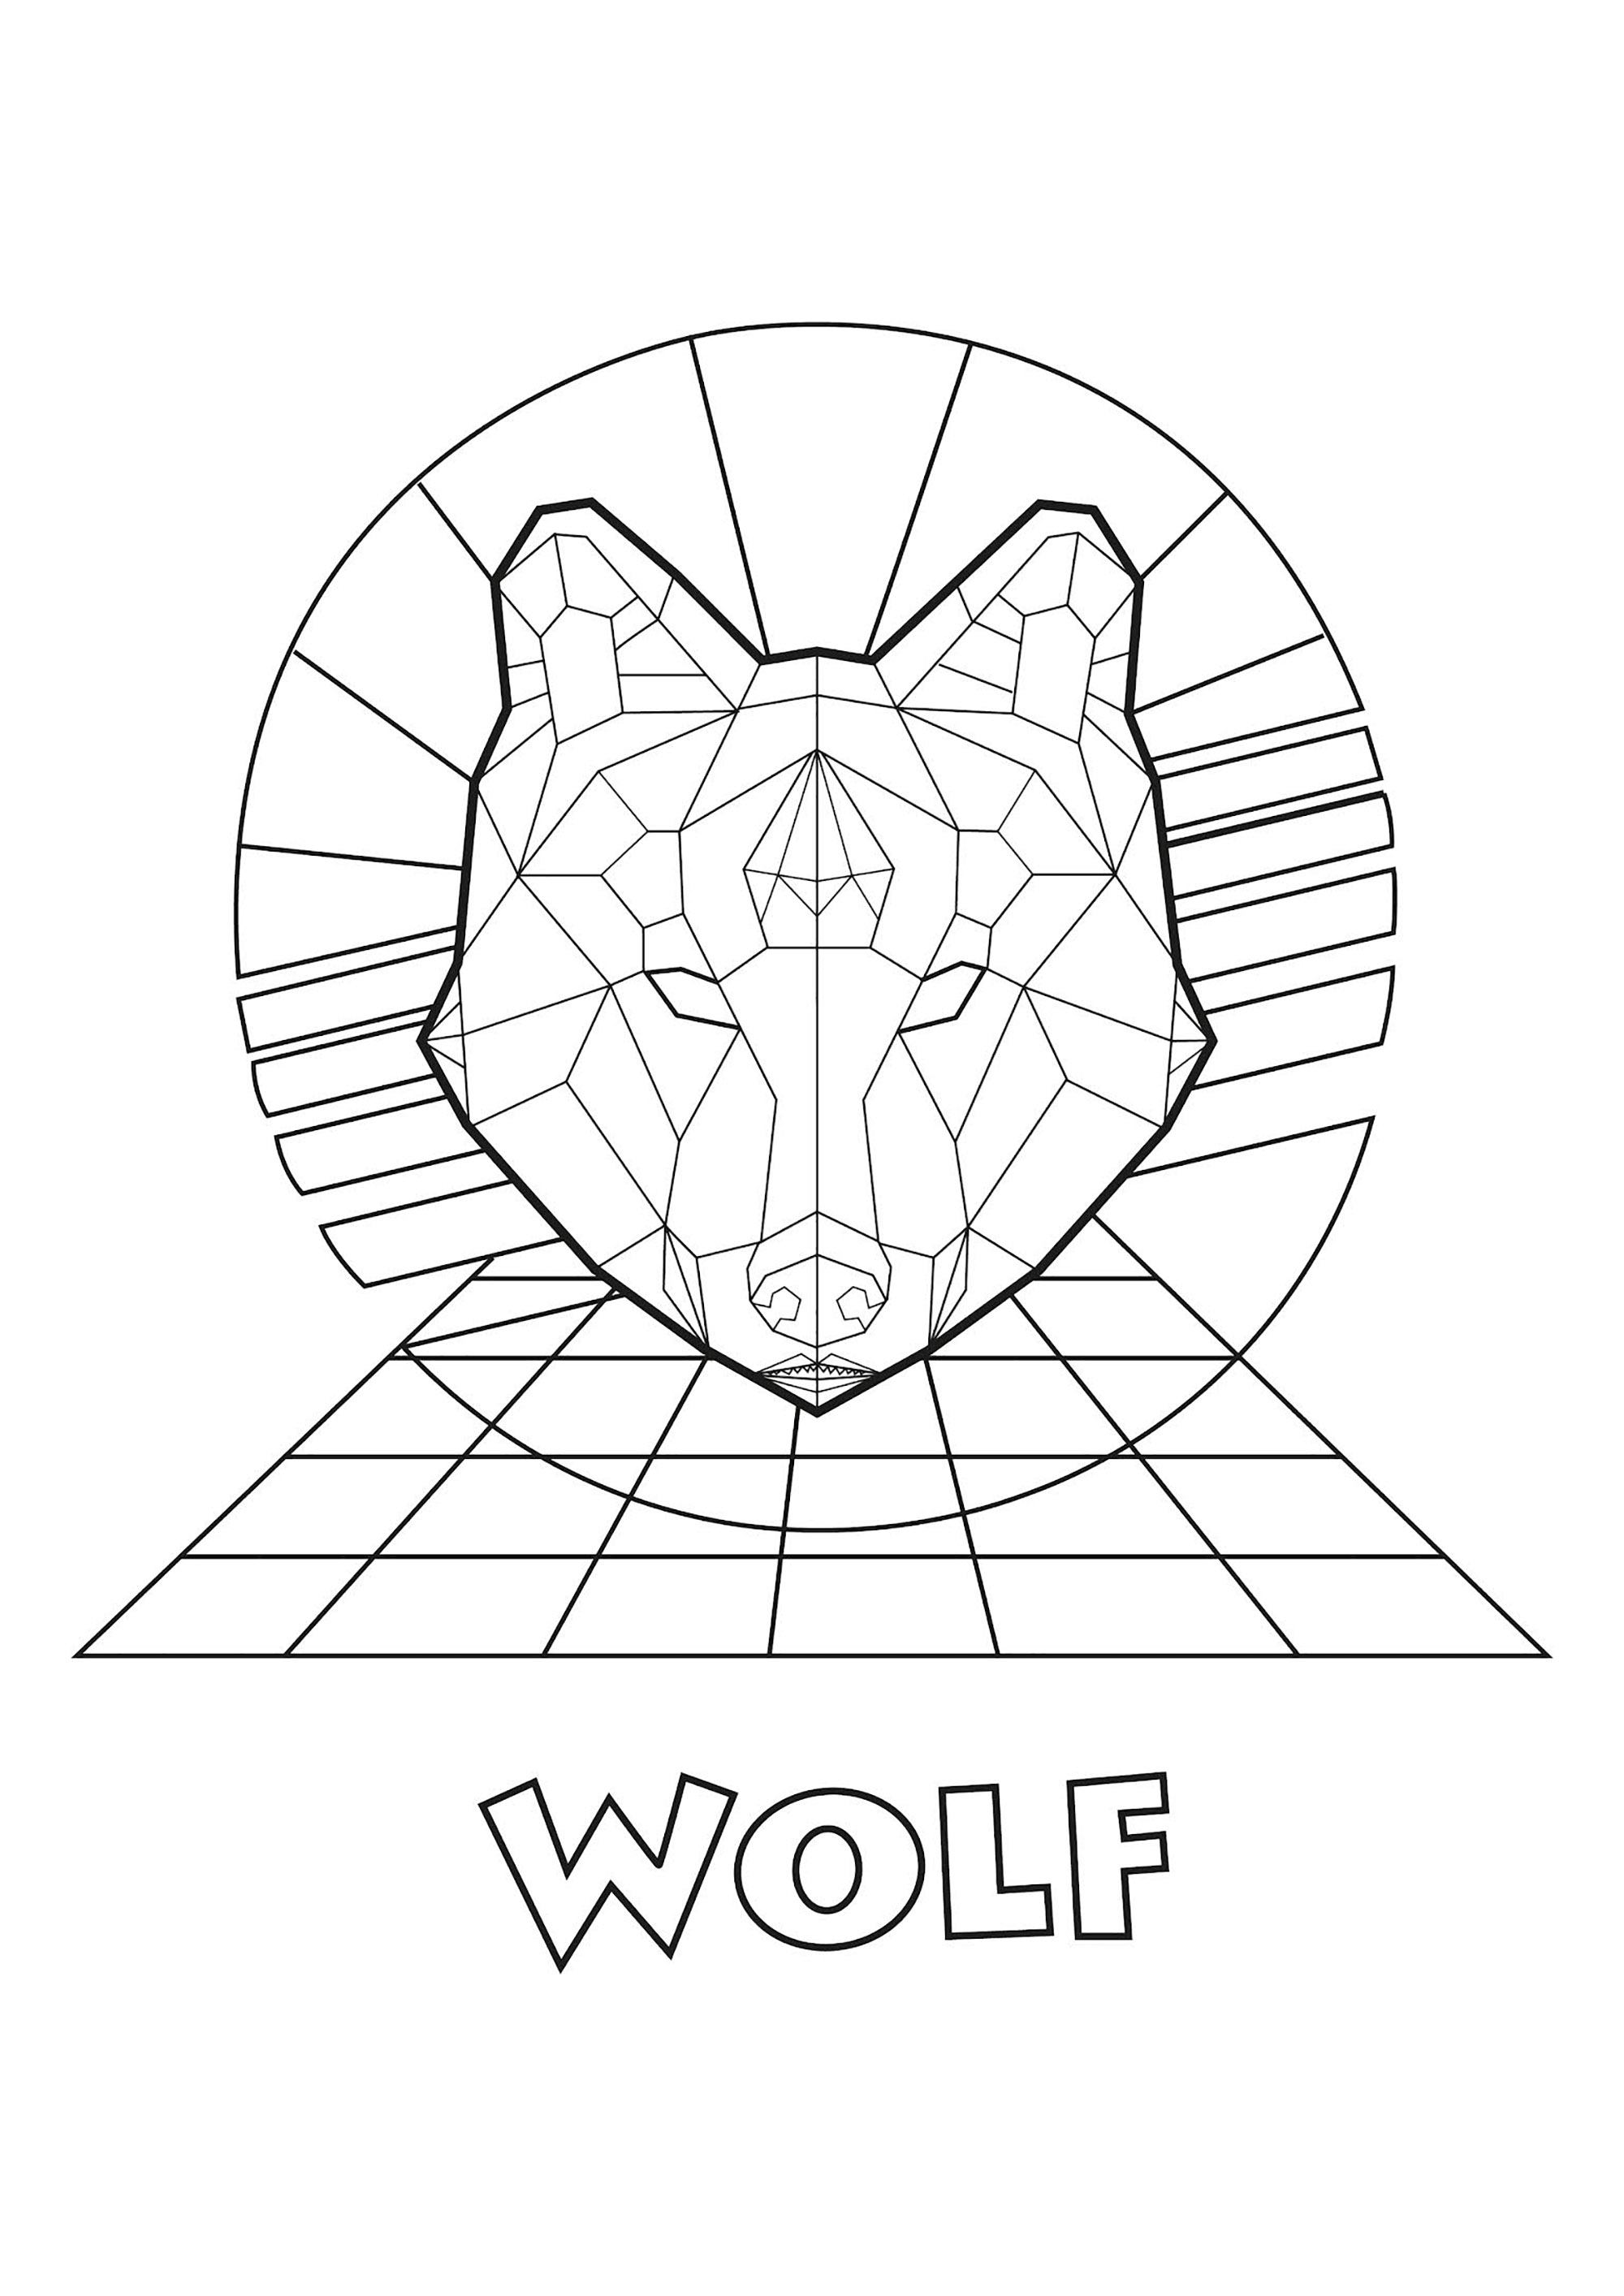 Testa di lupo creata con linee rette, con sfondo geometrico, Artista : Esteban